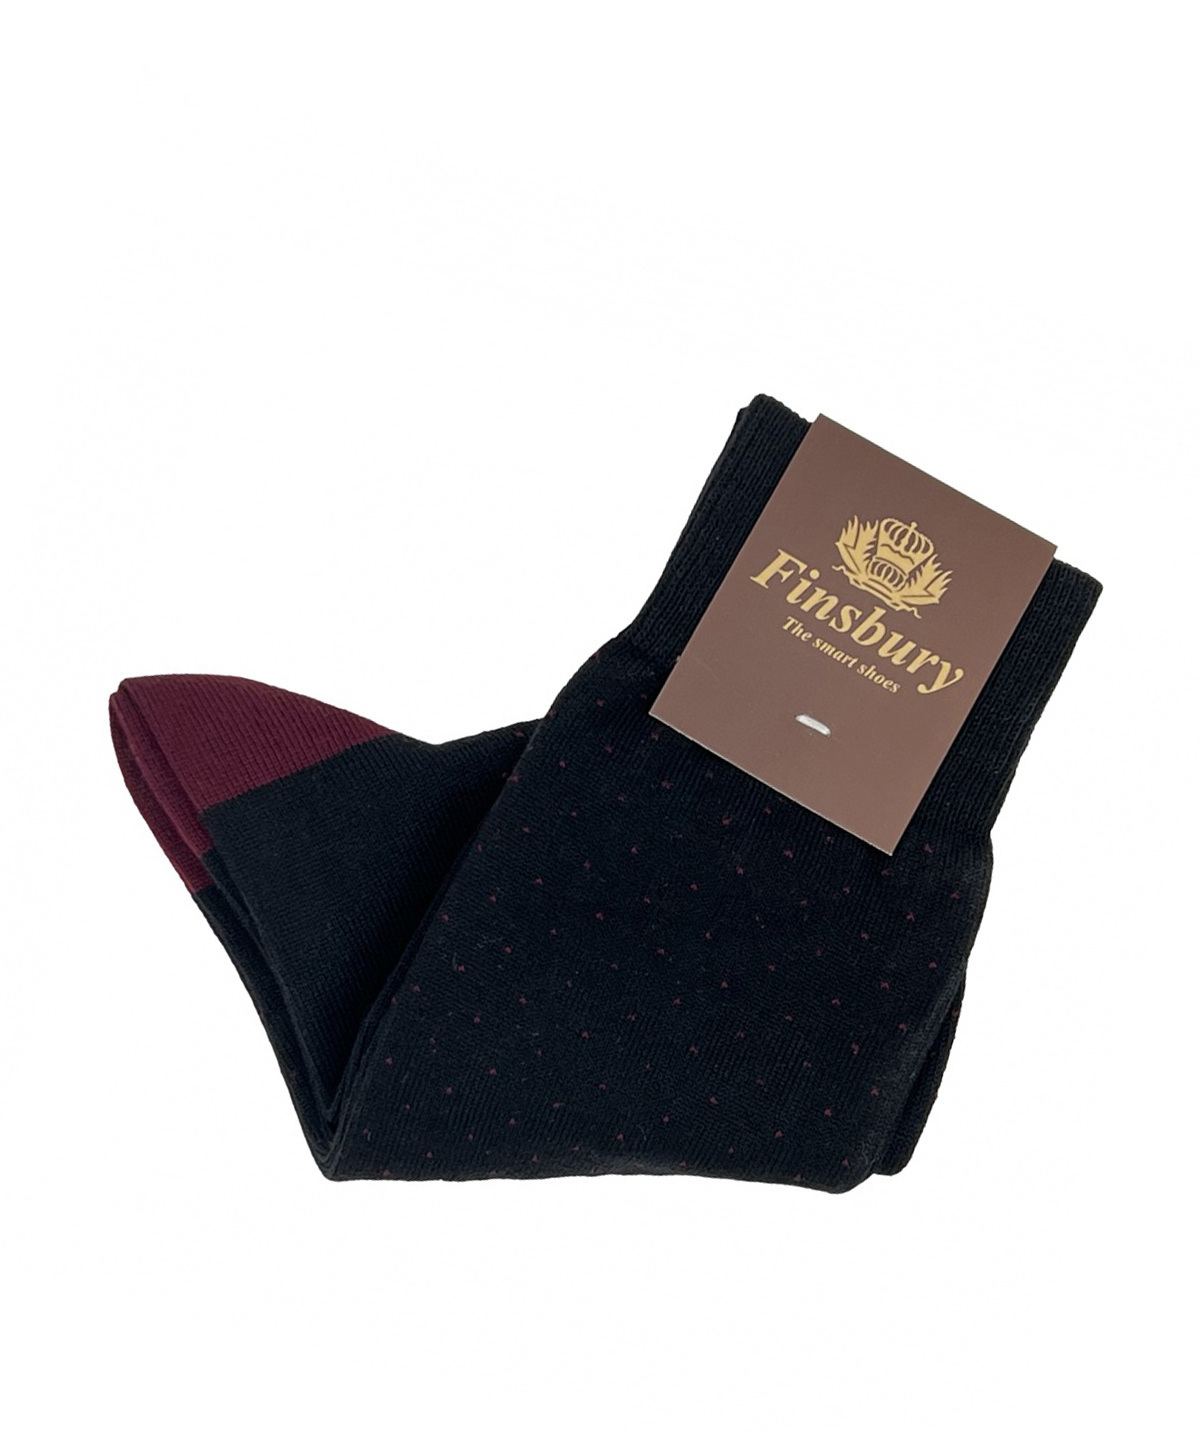 Chaussettes Noir et Bordeaux pour Homme 100% coton - Finsbury Shoes